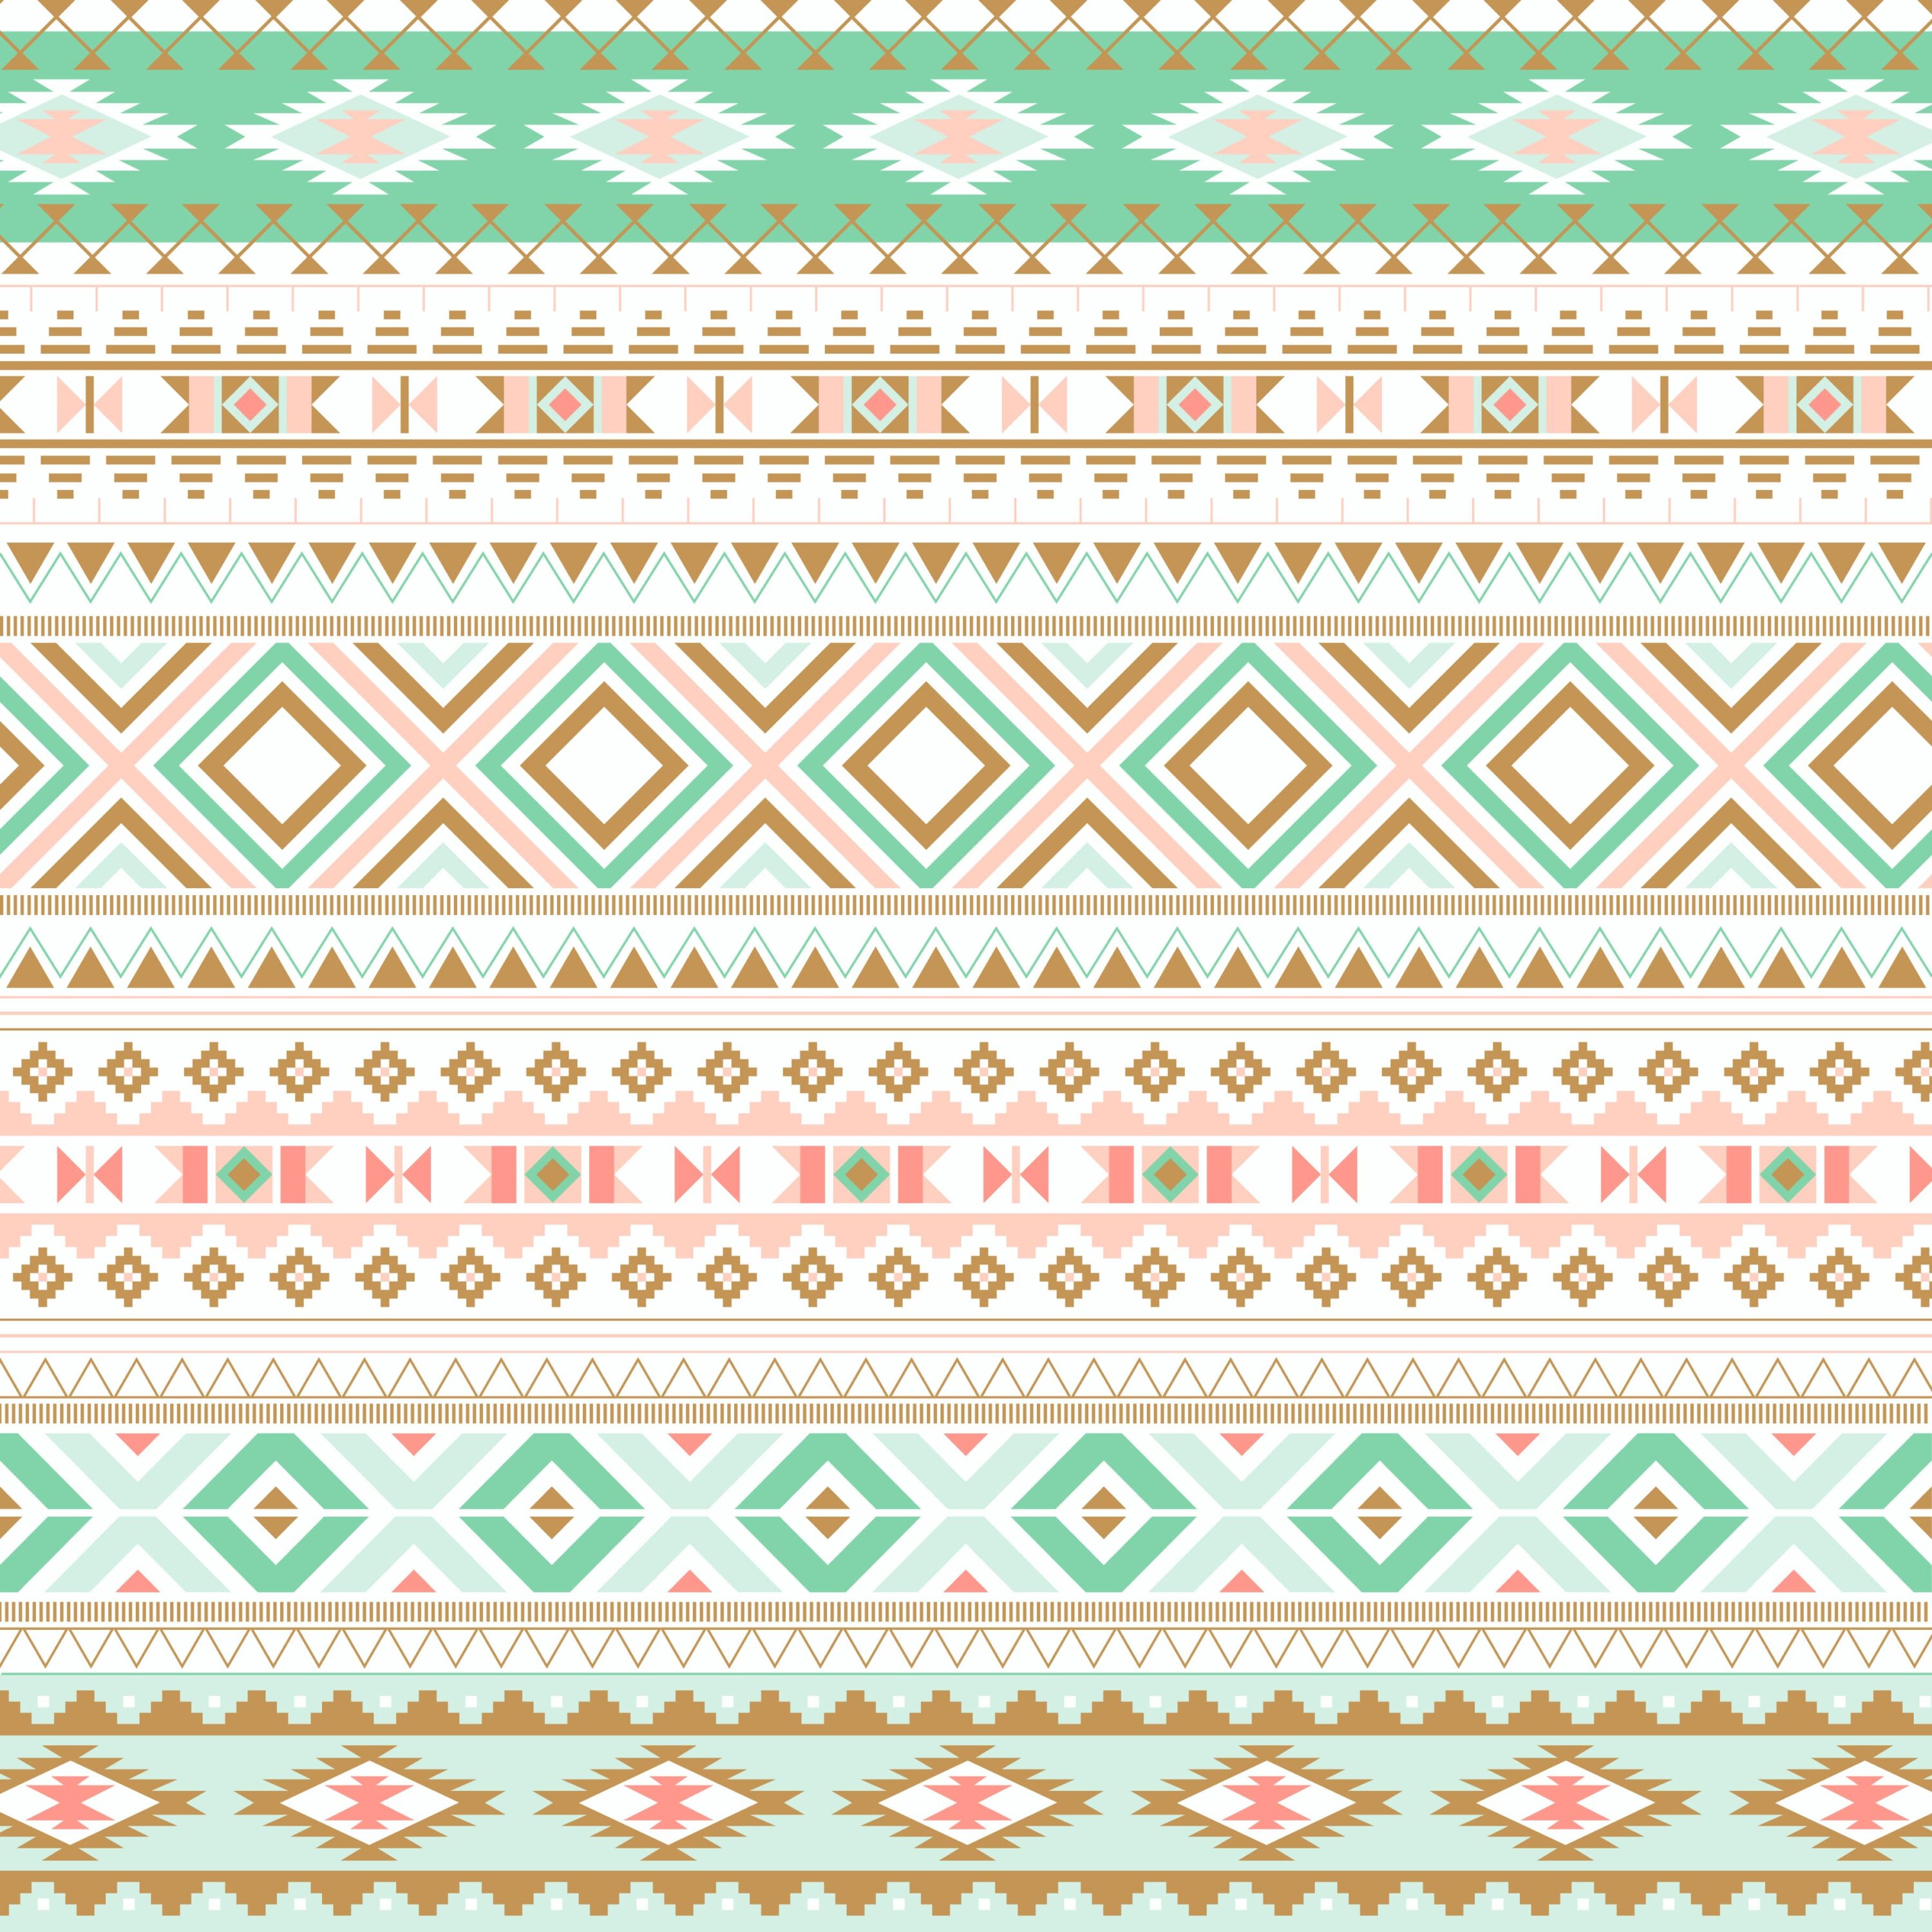 Digital Paper - Navajo II cover.